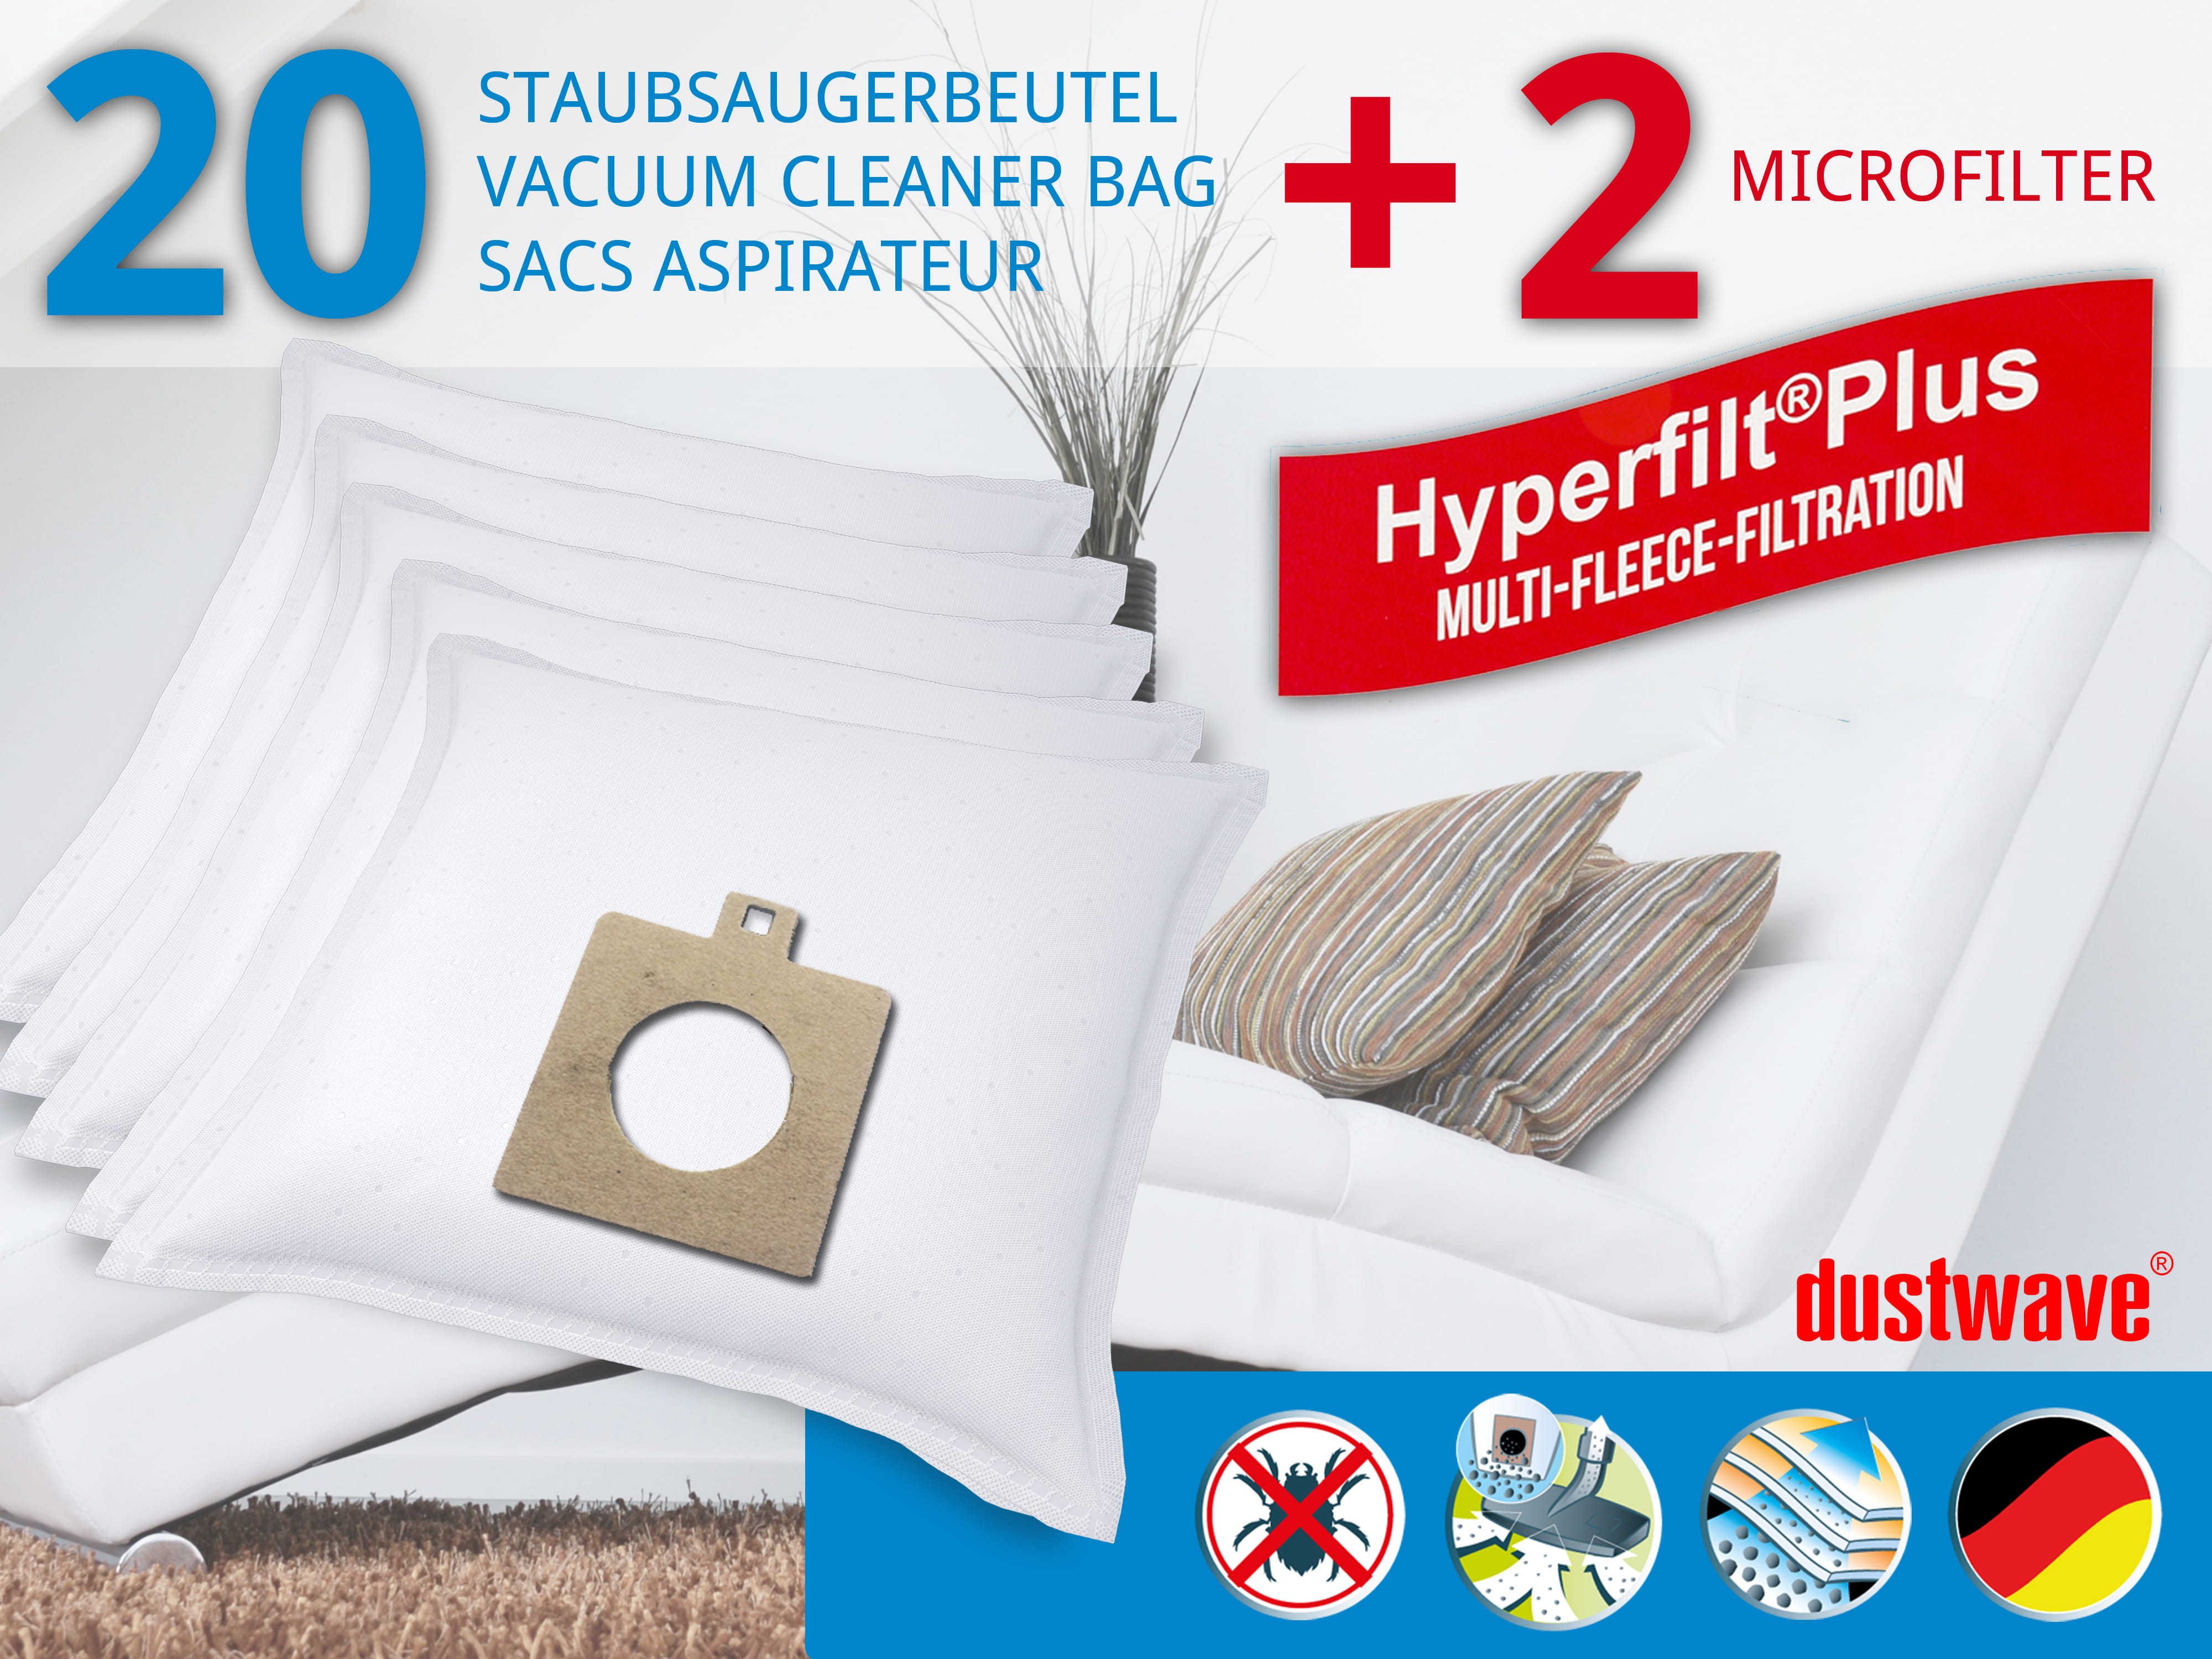 Dustwave® 20 Staubsaugerbeutel für AEG Smart 486 - hocheffizient mit Hygieneverschluss - Made in Germany